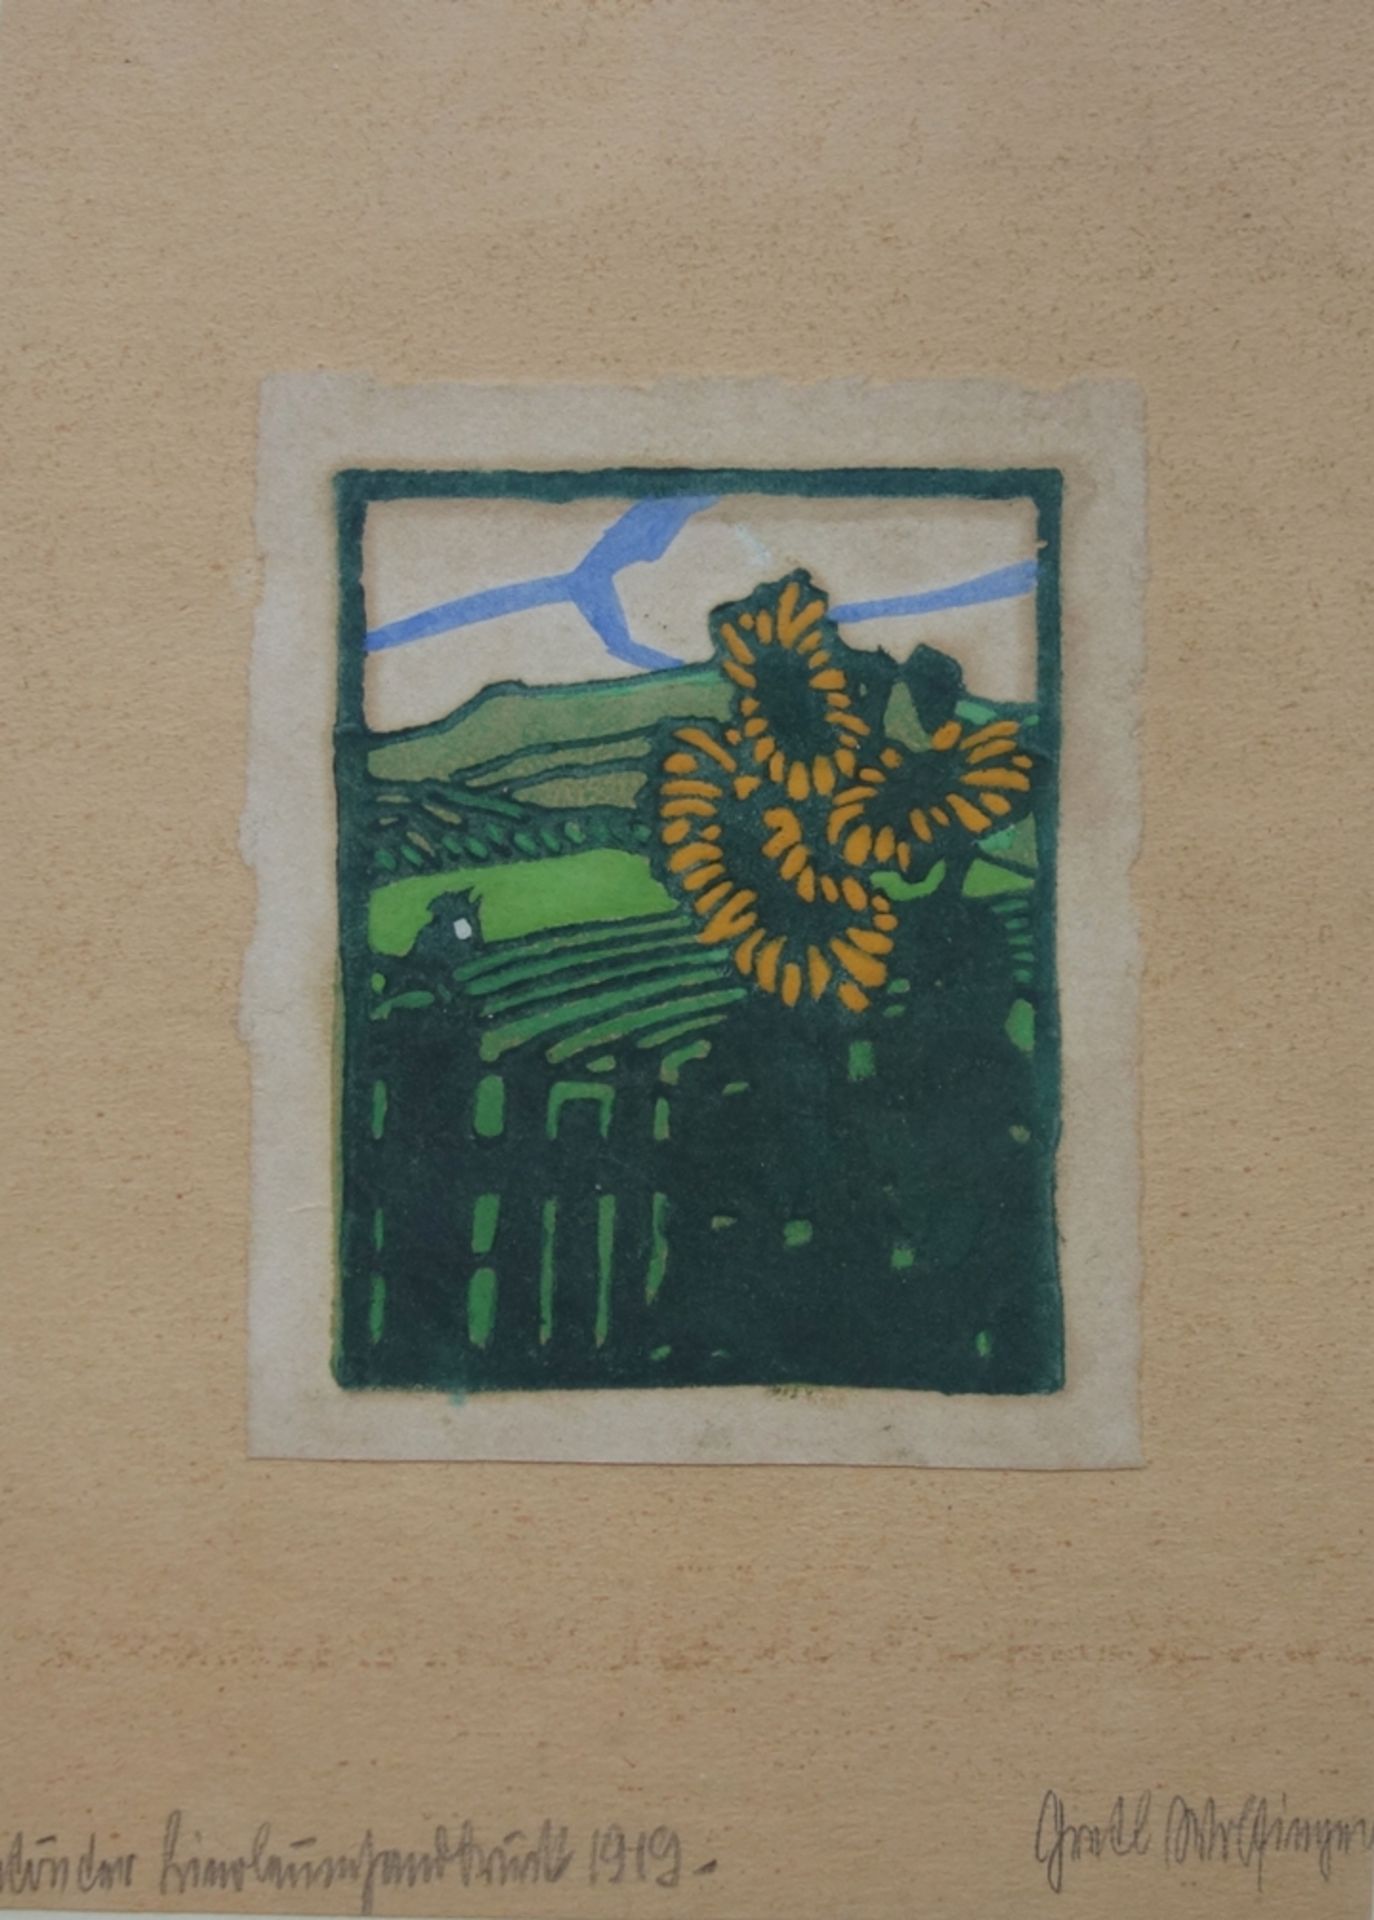 Margret Wolfinger (1891, Nürnberg - 1954, Behringsdorf), "Sonnenblumen am Garte